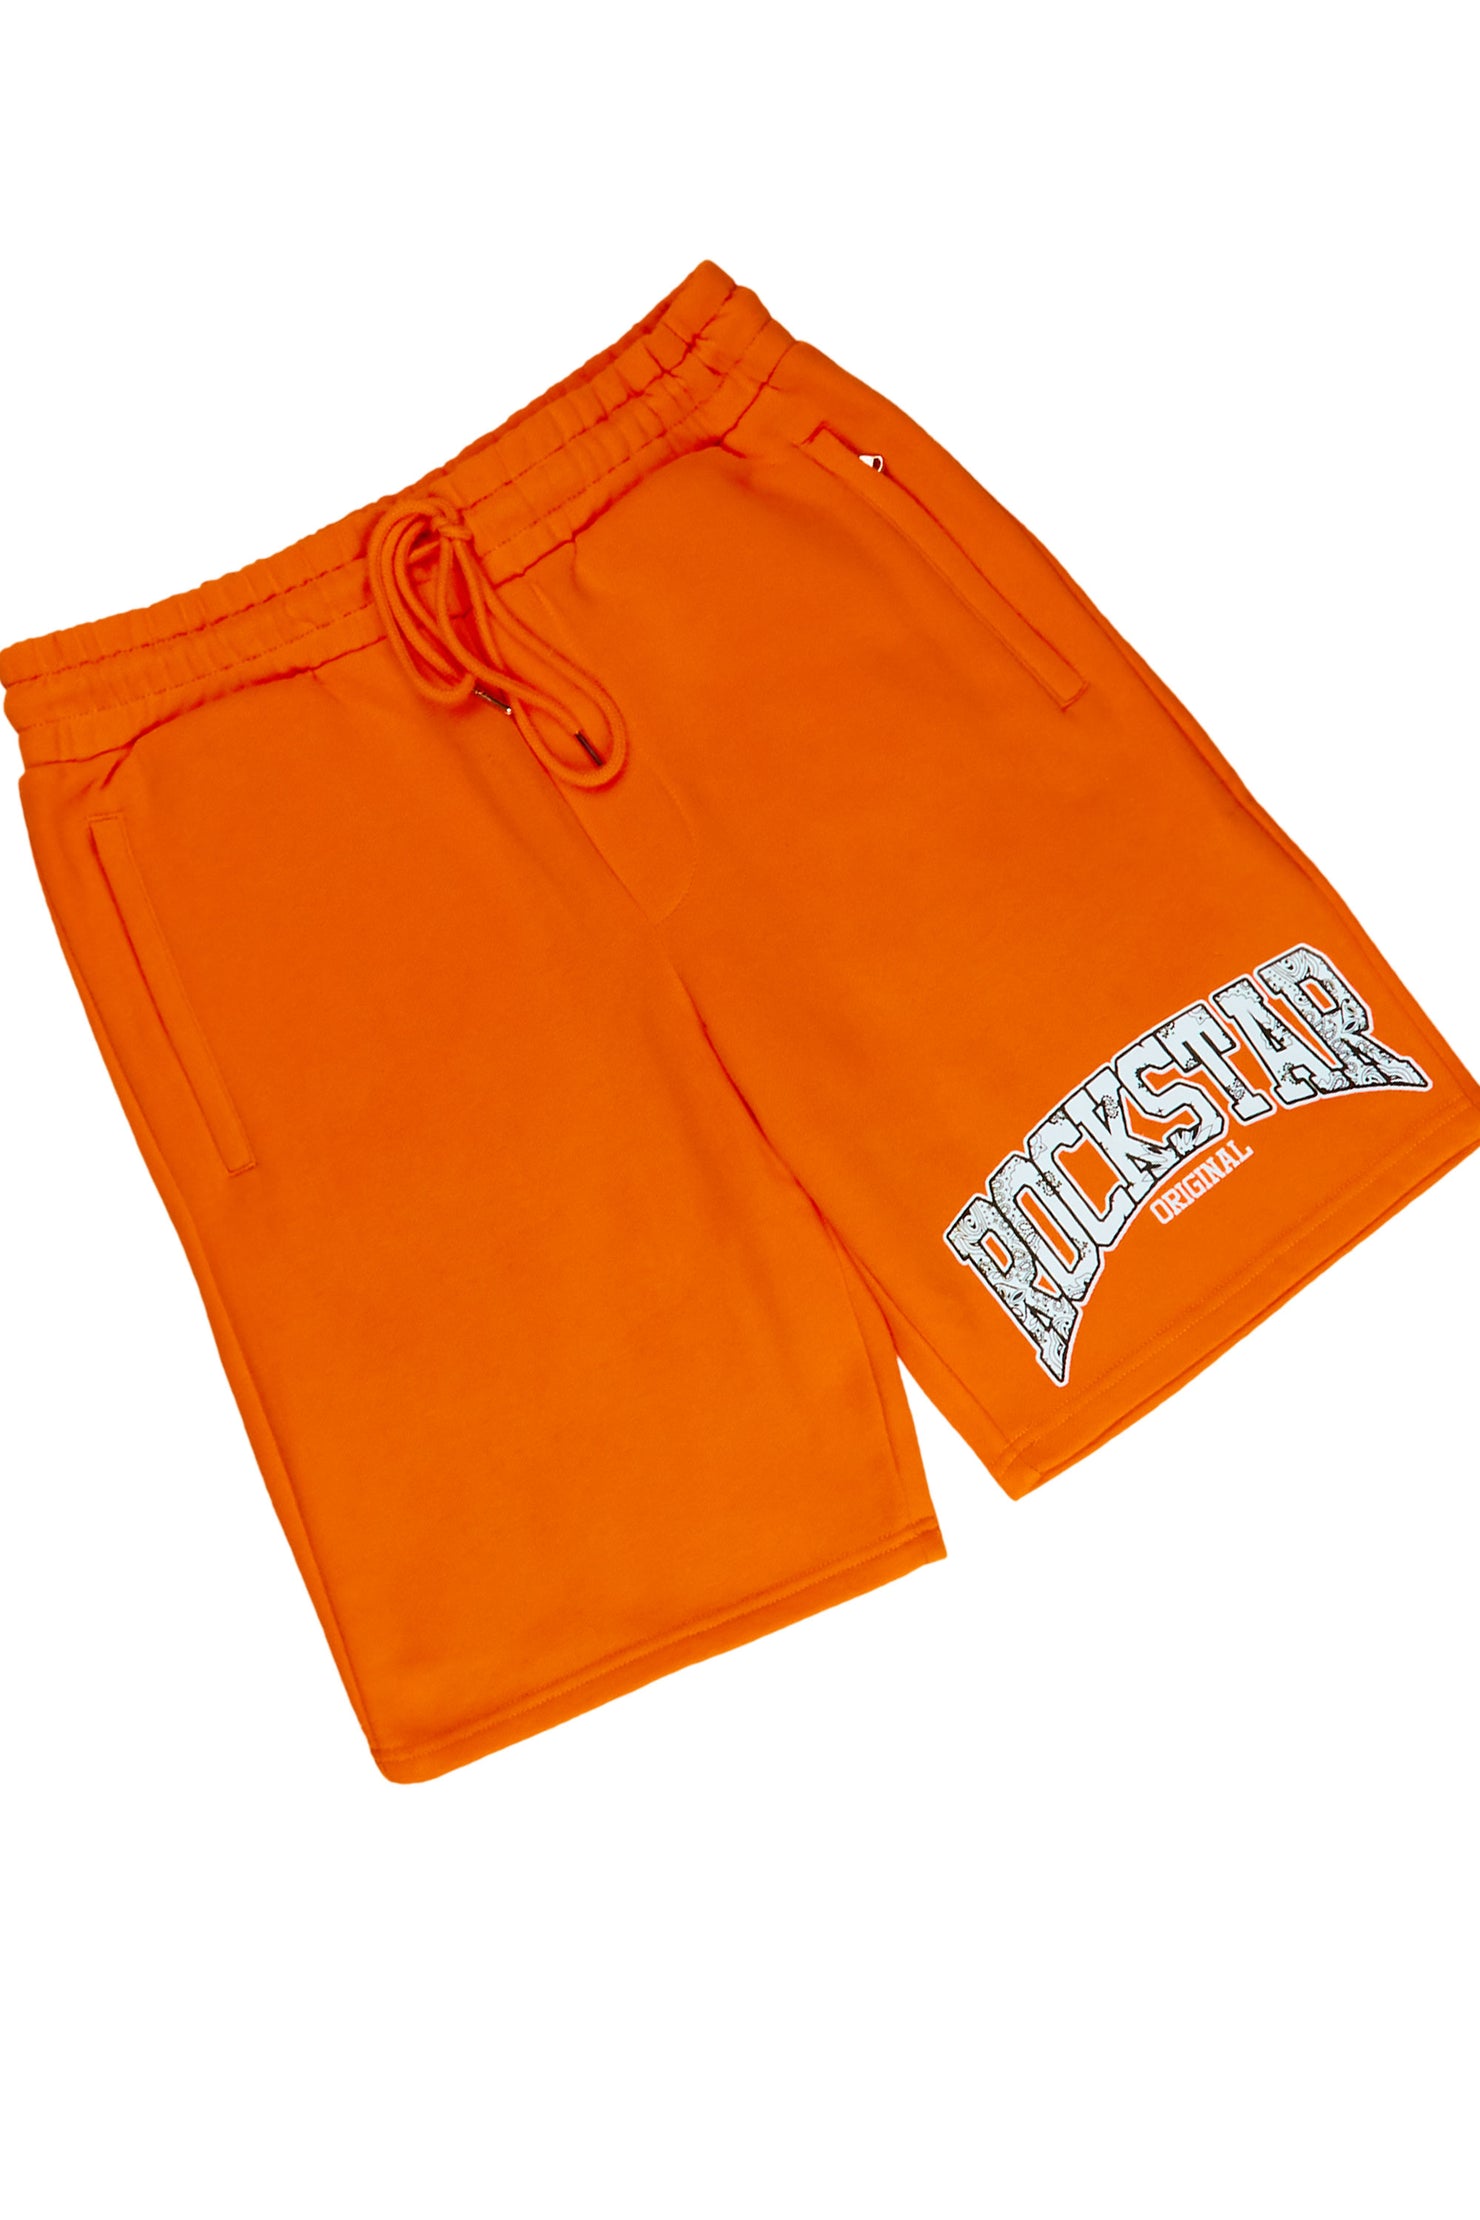 Zuri Orange Graphic T-Shirt Short Set